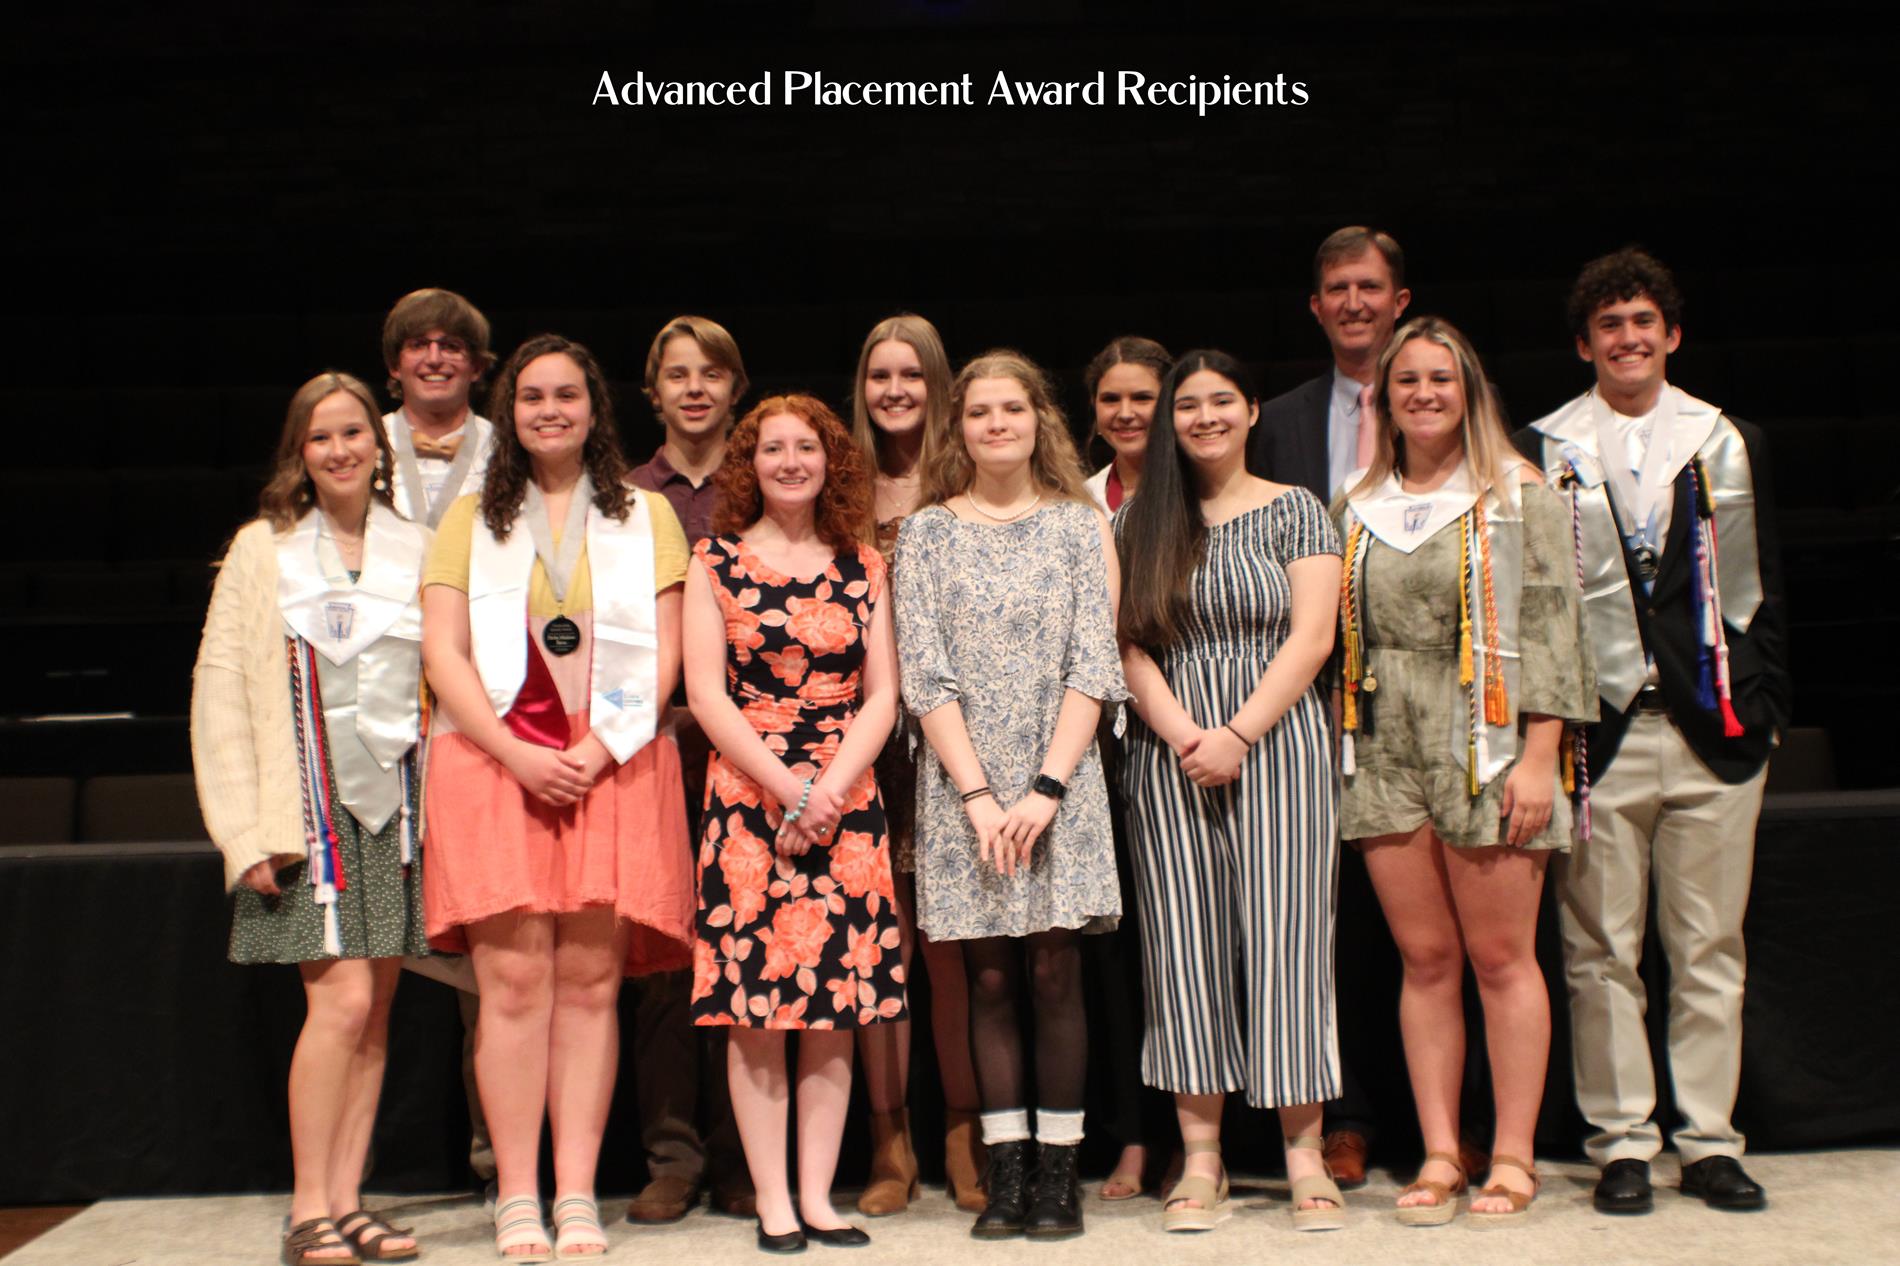 AP Award Recipients